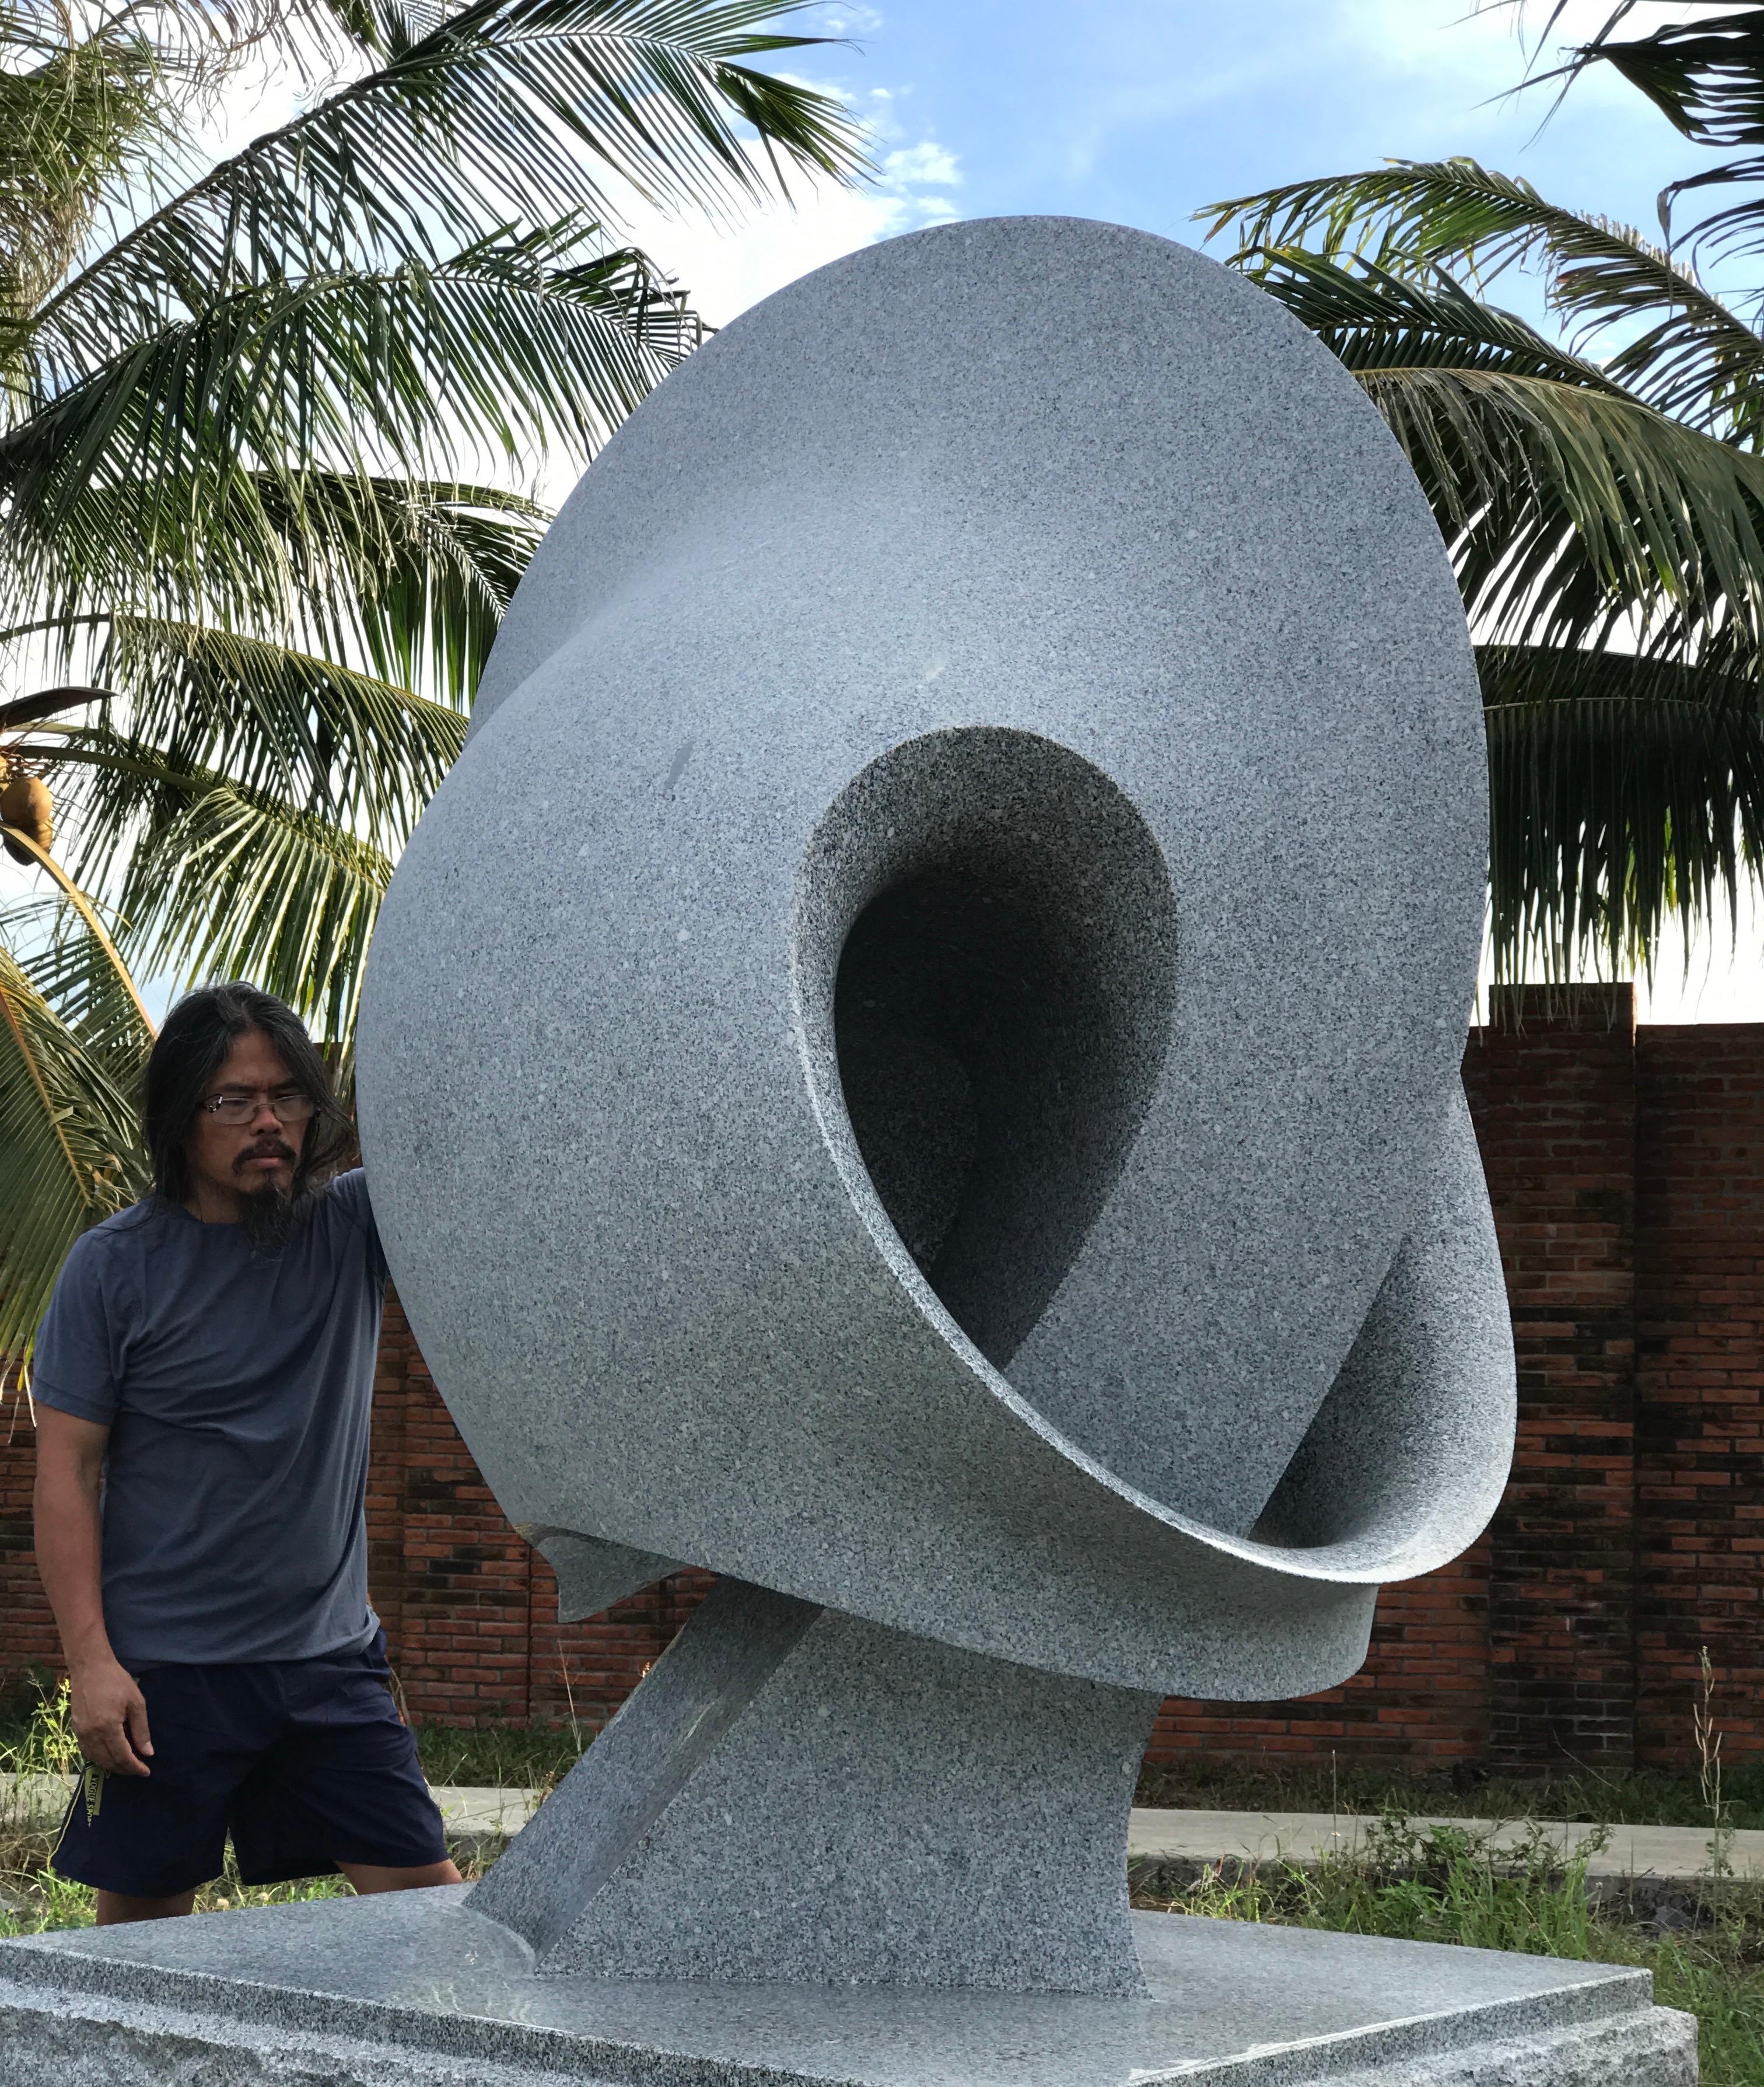 Night von Khang Pham-Neu, große abstrakte Skulptur aus Granit, grau, weiß, poliert

Die Lieferung dieser Skulptur nimmt zusätzliche Zeit in Anspruch. Für die Lieferung ist eine Abstimmung mit dem Versandteam von 1st Dibs erforderlich.

Khang